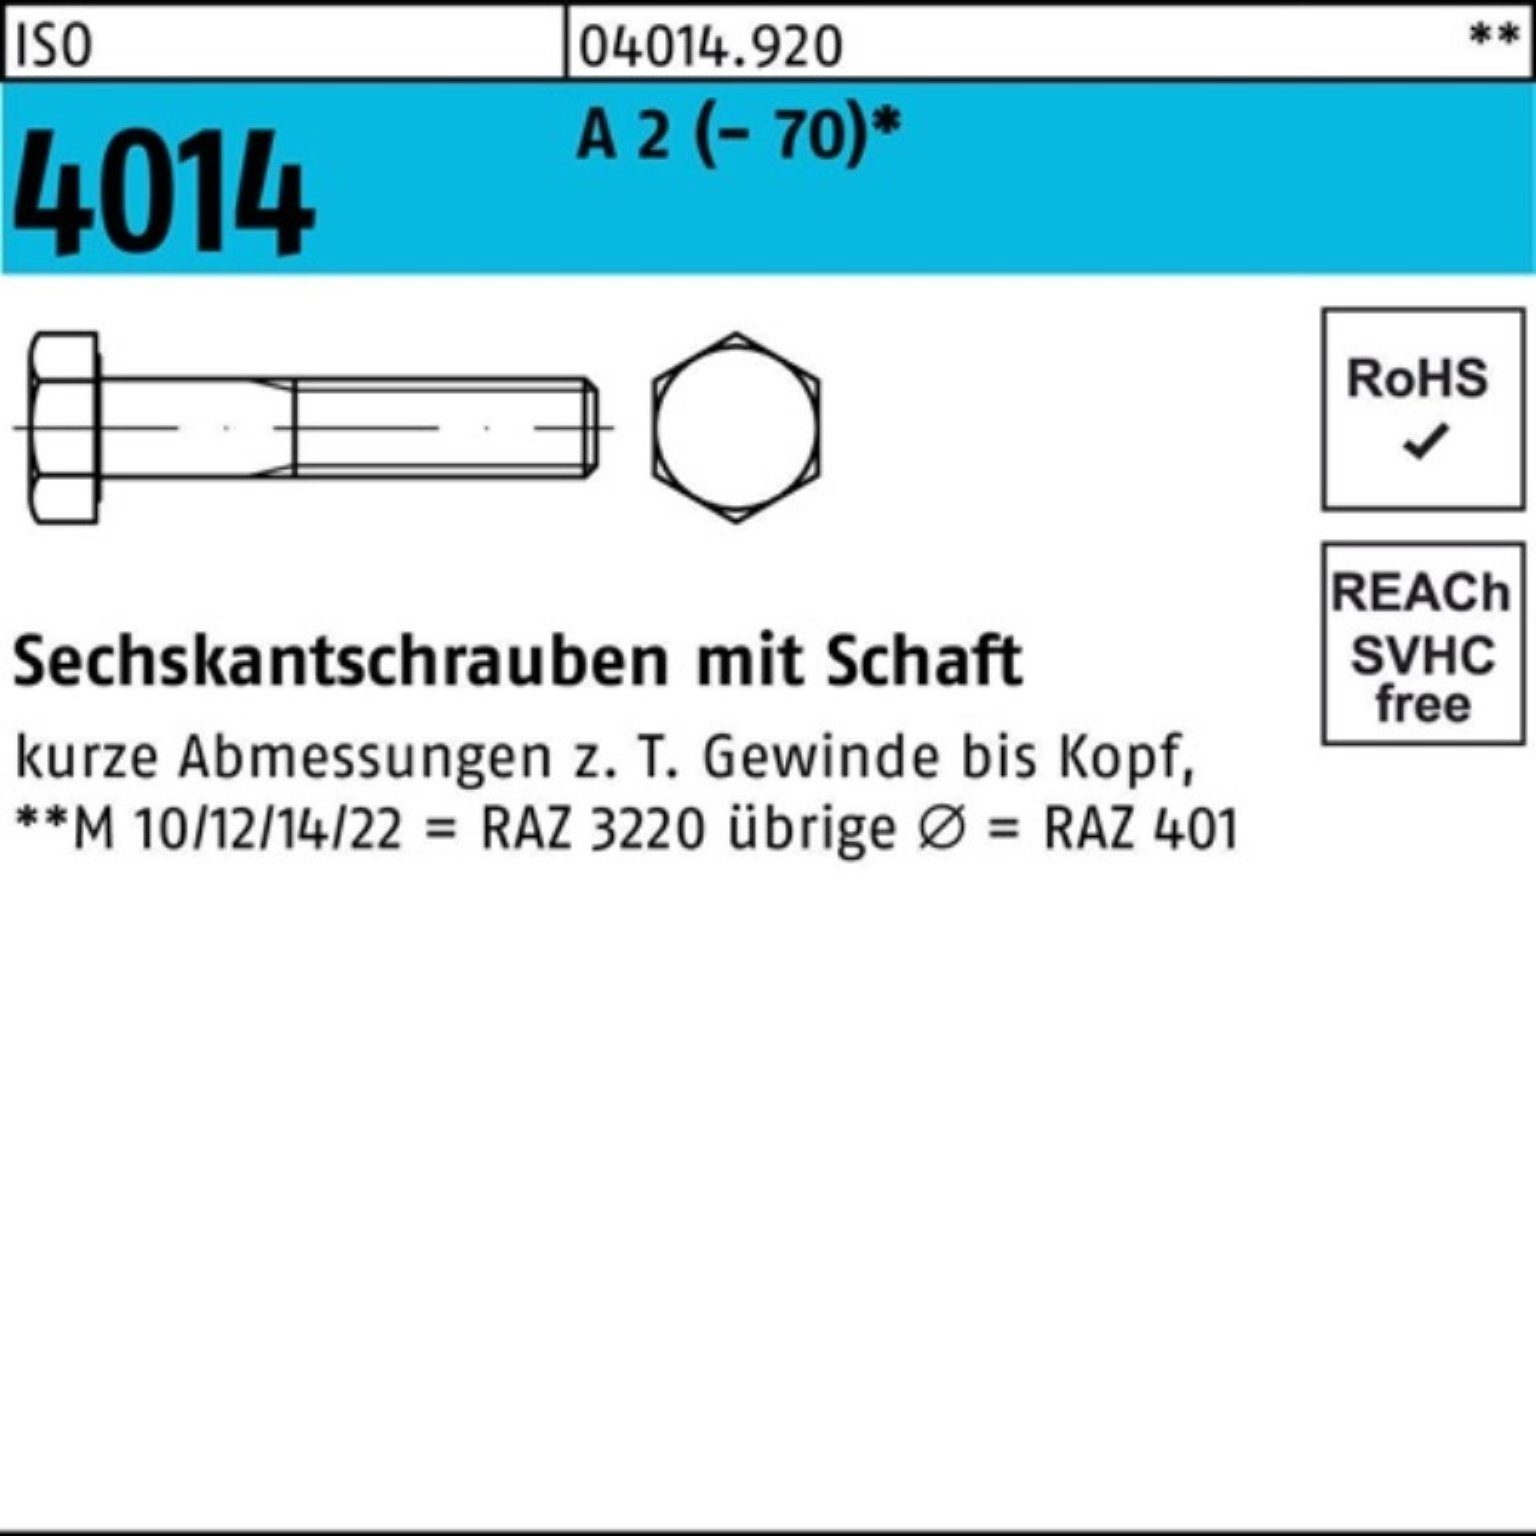 Bufab Sechskantschraube 100er Pack Sechskantschraube ISO 4014 Schaft M20x 90 A 2 (70) 1 Stü